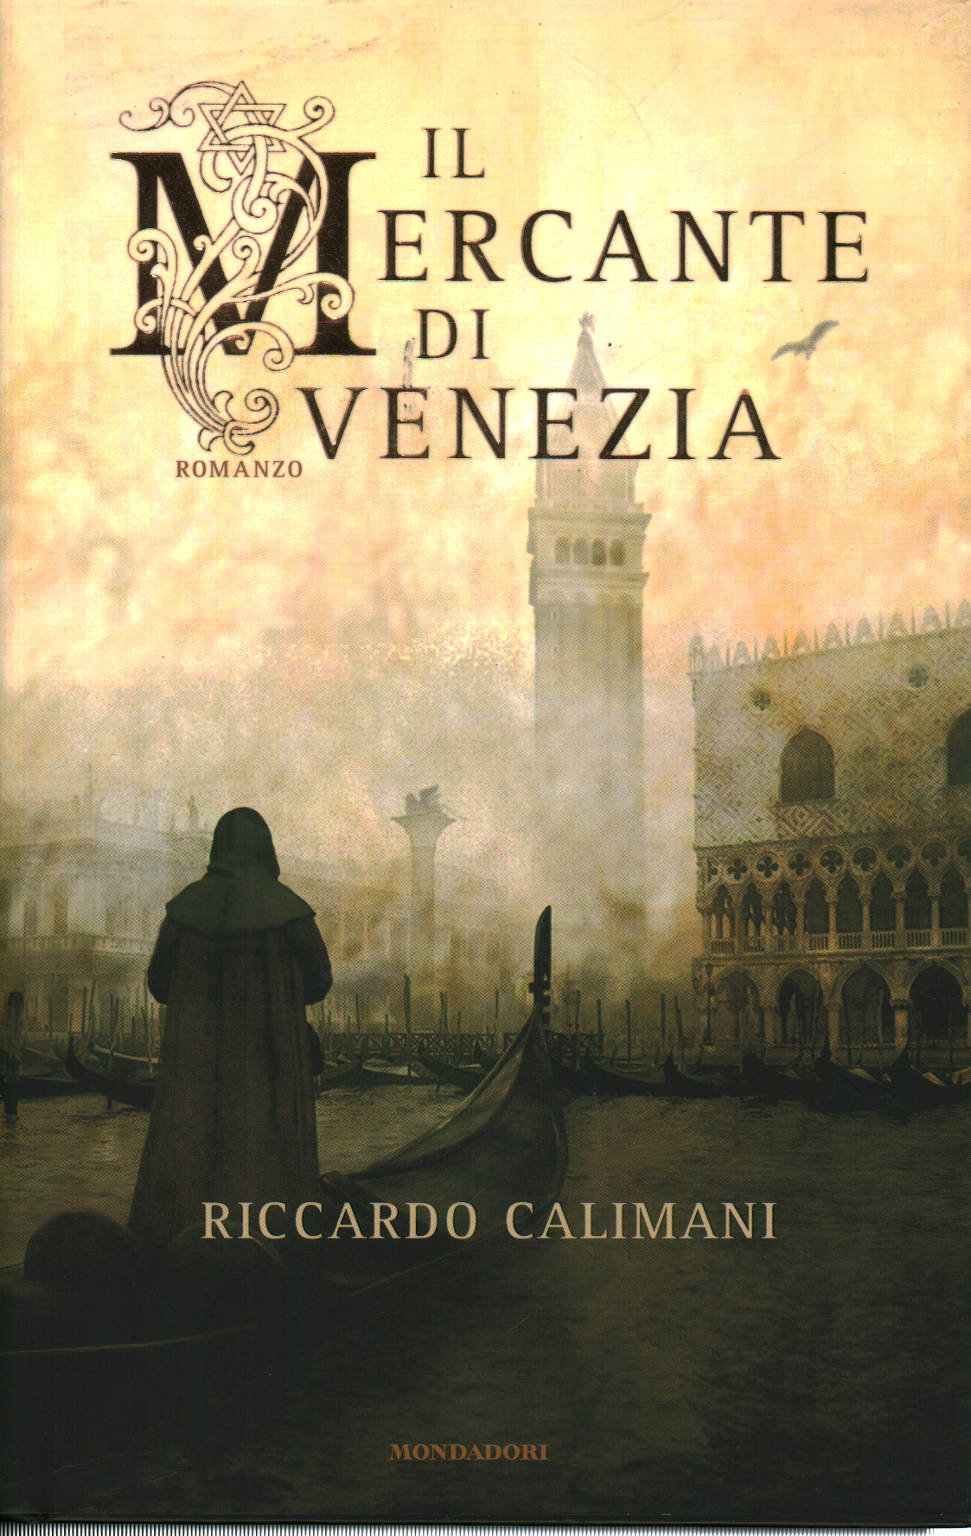 Der Kaufmann von Venedig, Riccardo Calimani